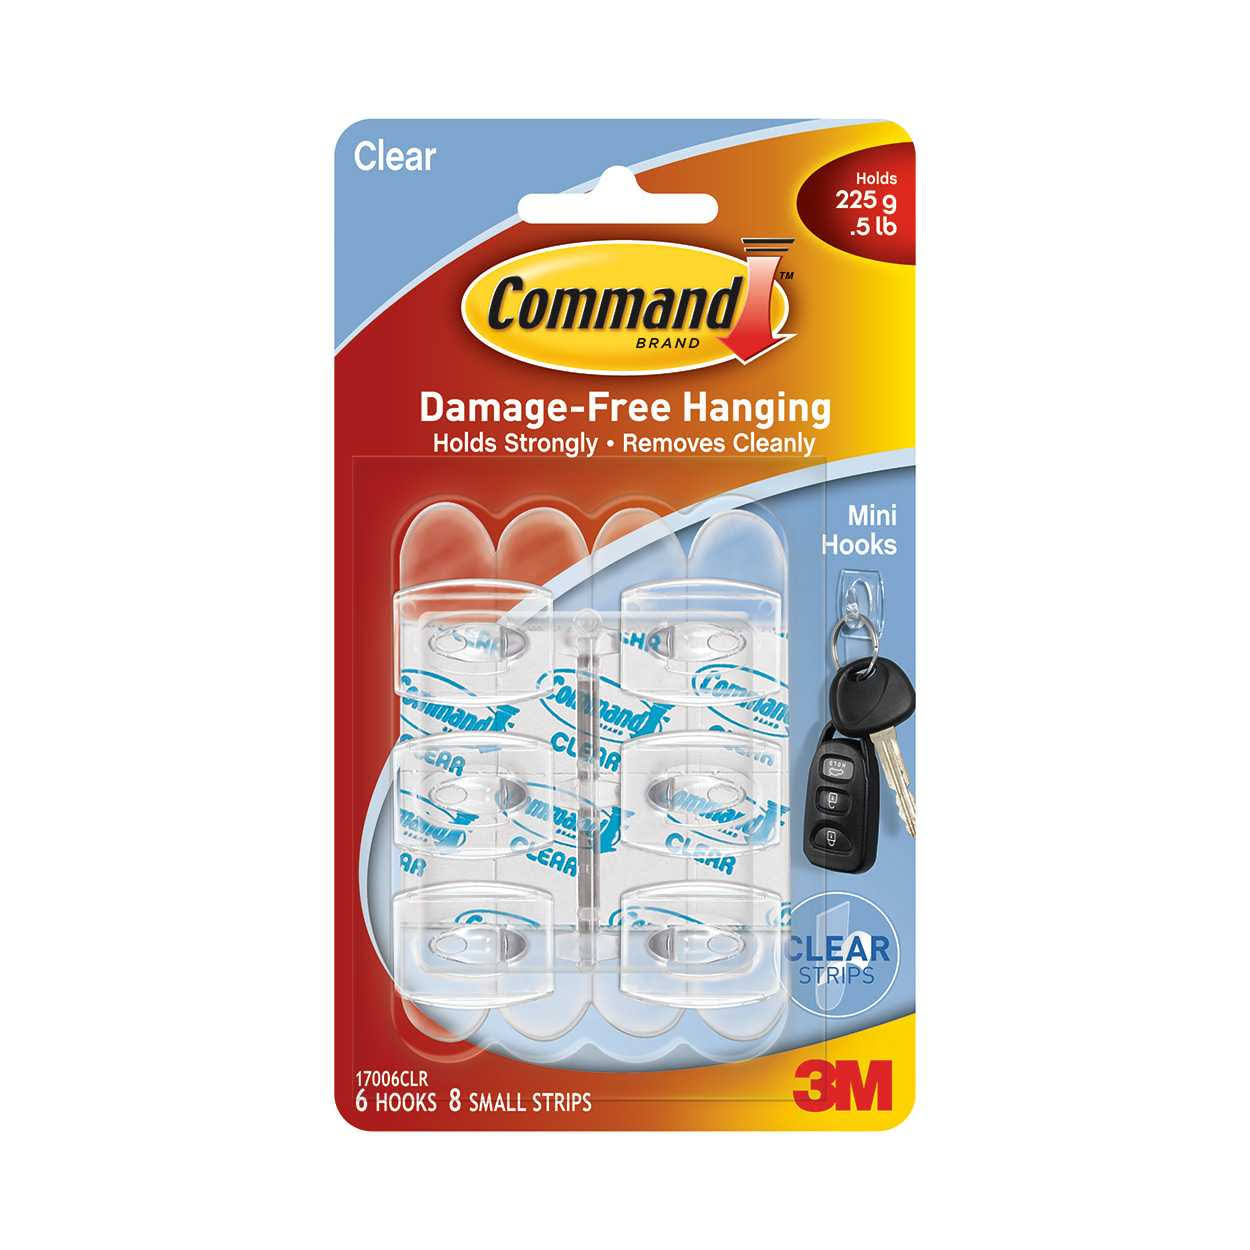 3M Command Plastic Mini Hooks - Clear, 6 Pack